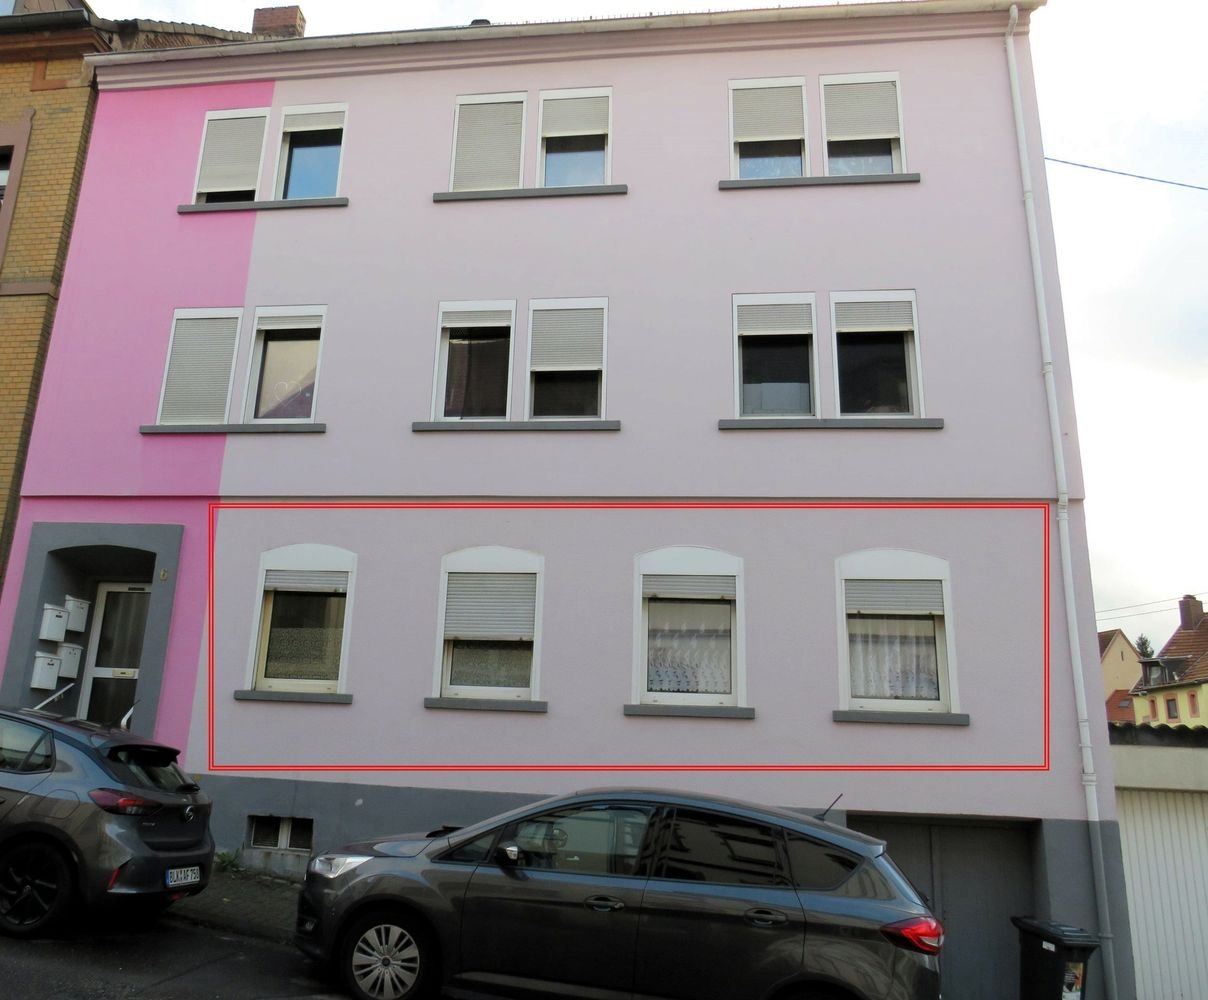 Ruhig wohnen in der City - 107.000,00 EUR Kaufpreis, ca.  90,00 m² in Neunkirchen (PLZ: 66538) Innenstadt